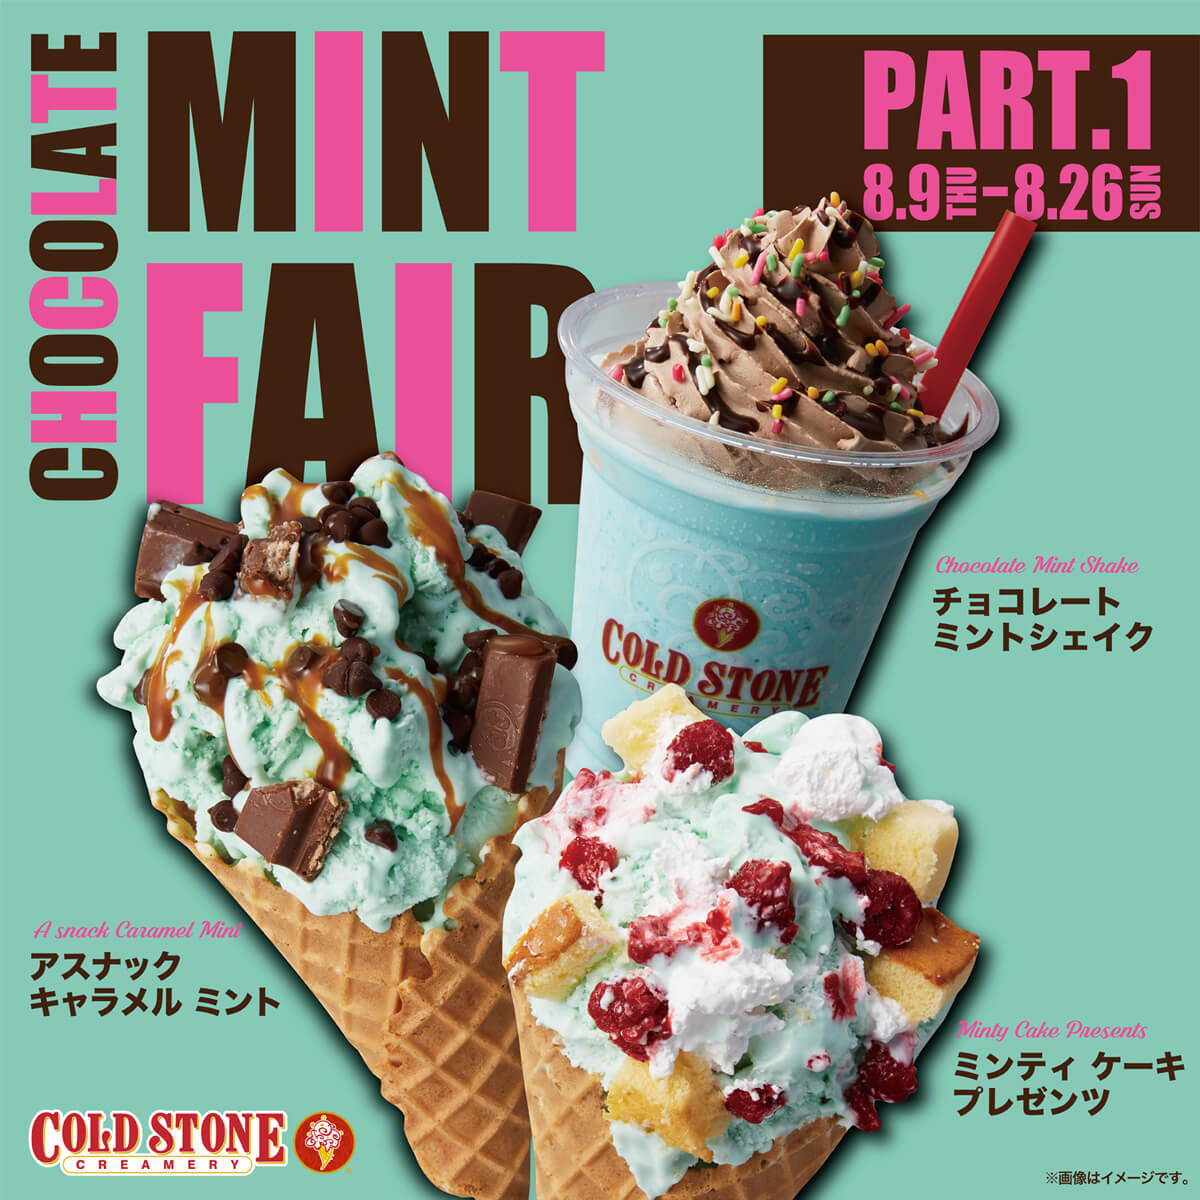 8 月は チョコミント強化月間 ミントを主役とした ミントフェア 第1弾 を開催 コールドストーンクリーマリージャパン Cold Stone Creamery Japan